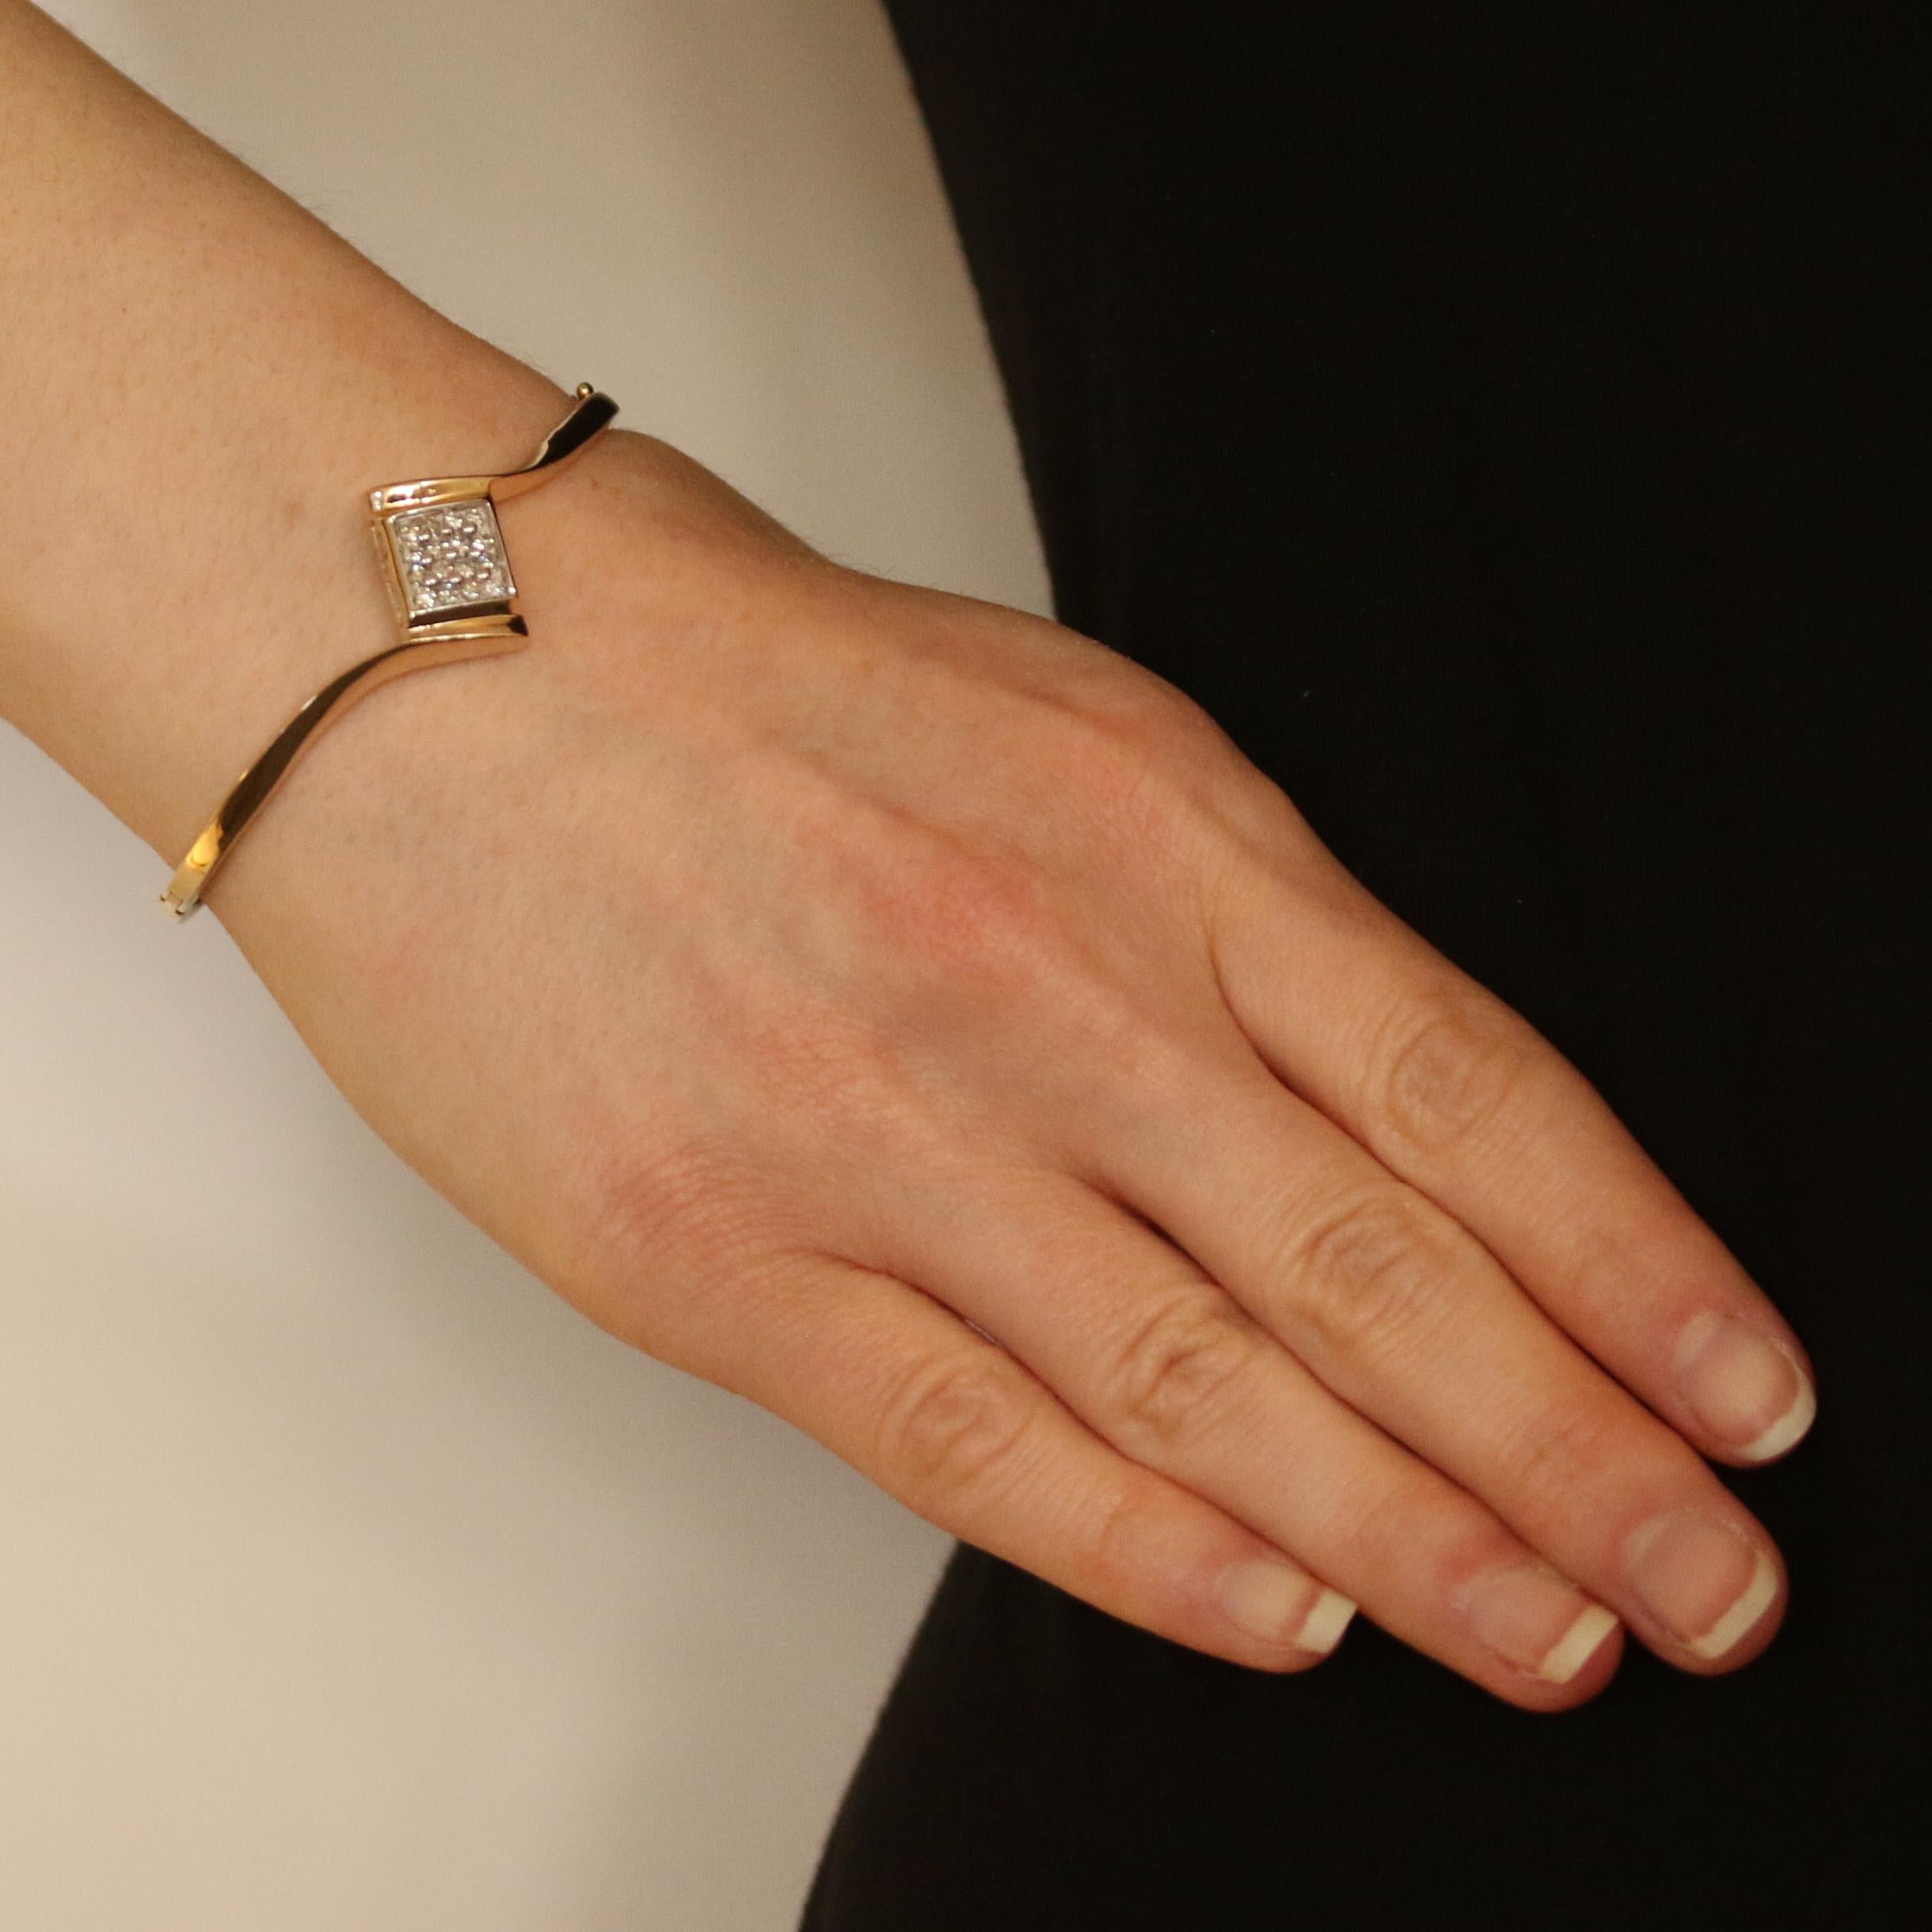 Beschenken Sie sie dieses Jahr mit funkelnden Diamanten! Dieses Armband aus 10 Karat Gelbgold im schmeichelhaften Armreif-Stil zeigt ein anmutiges Bypass-Design mit einem strahlenden Diamantencluster in einem Rahmen aus 10 Karat Weißgold. 
 
